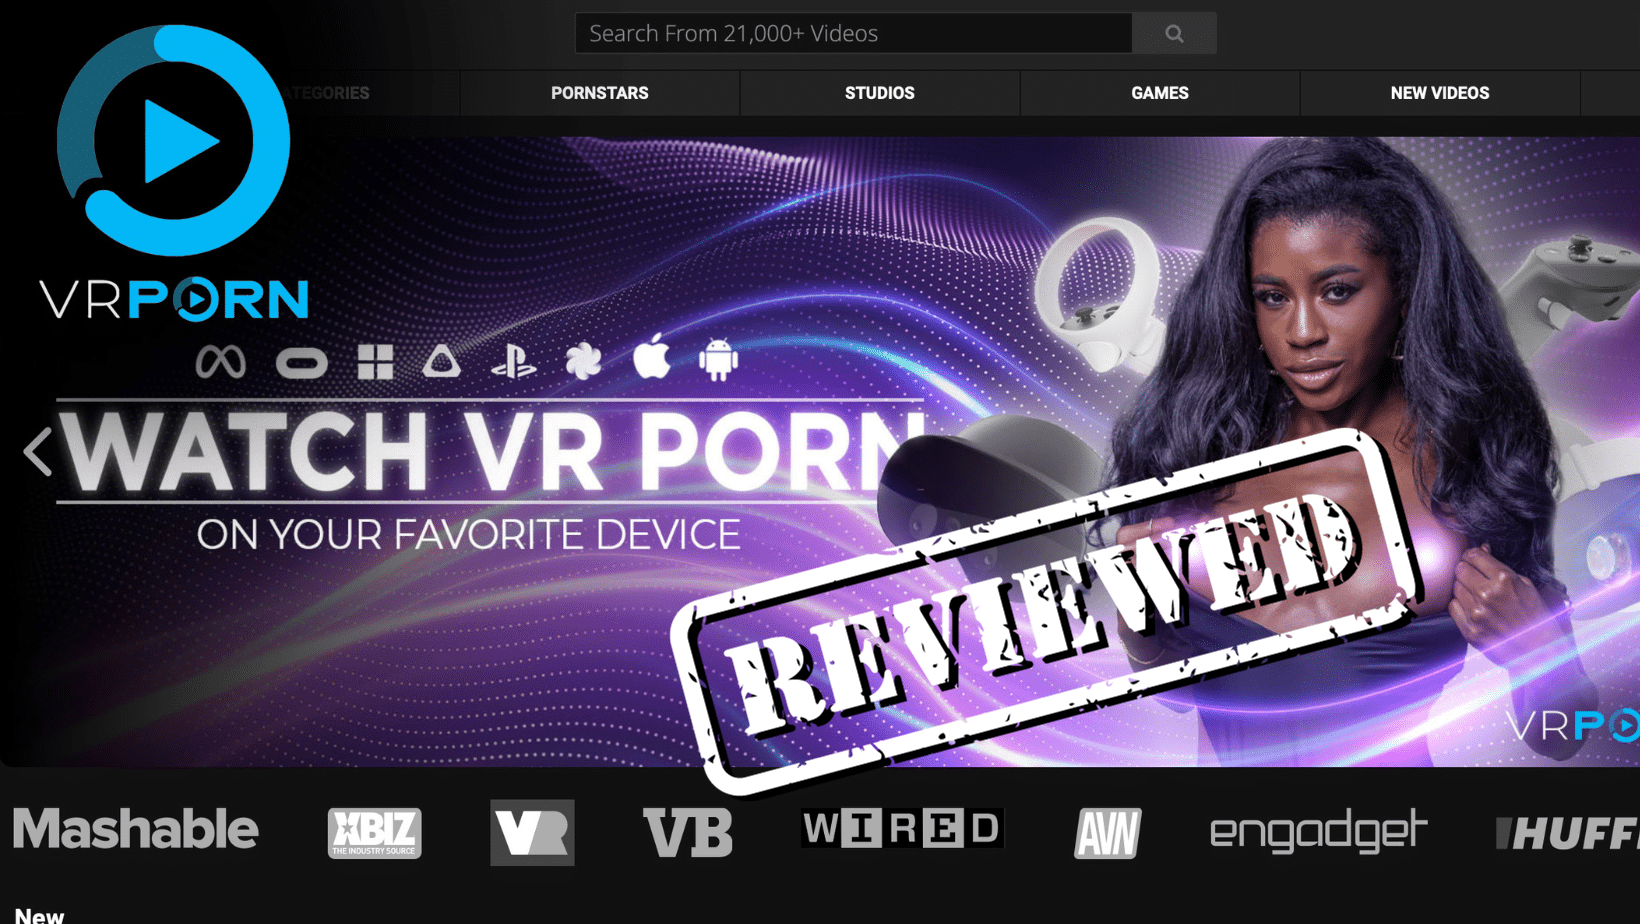 1640px x 924px - VRPorn.com Review: Is It a Legit VR Porn Site? | Bedbible.com